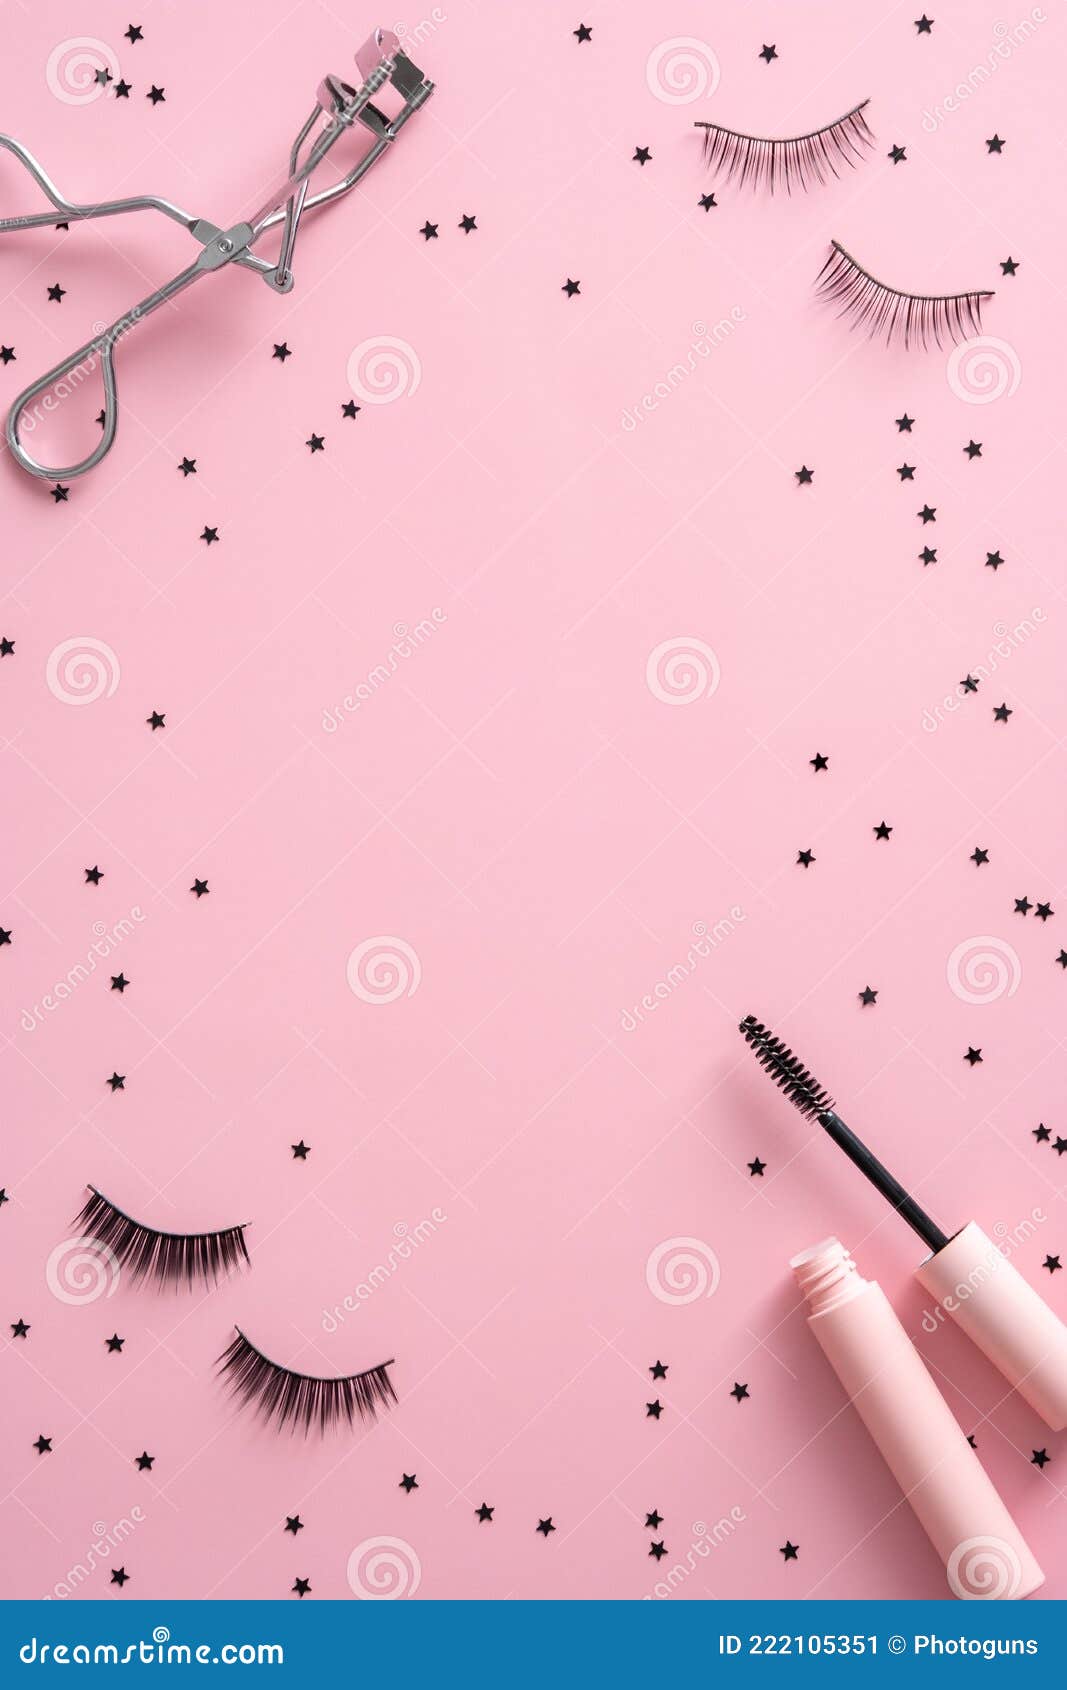 Frame of Mascara, False Eyelashes, Curler and Confetti on Pink ...